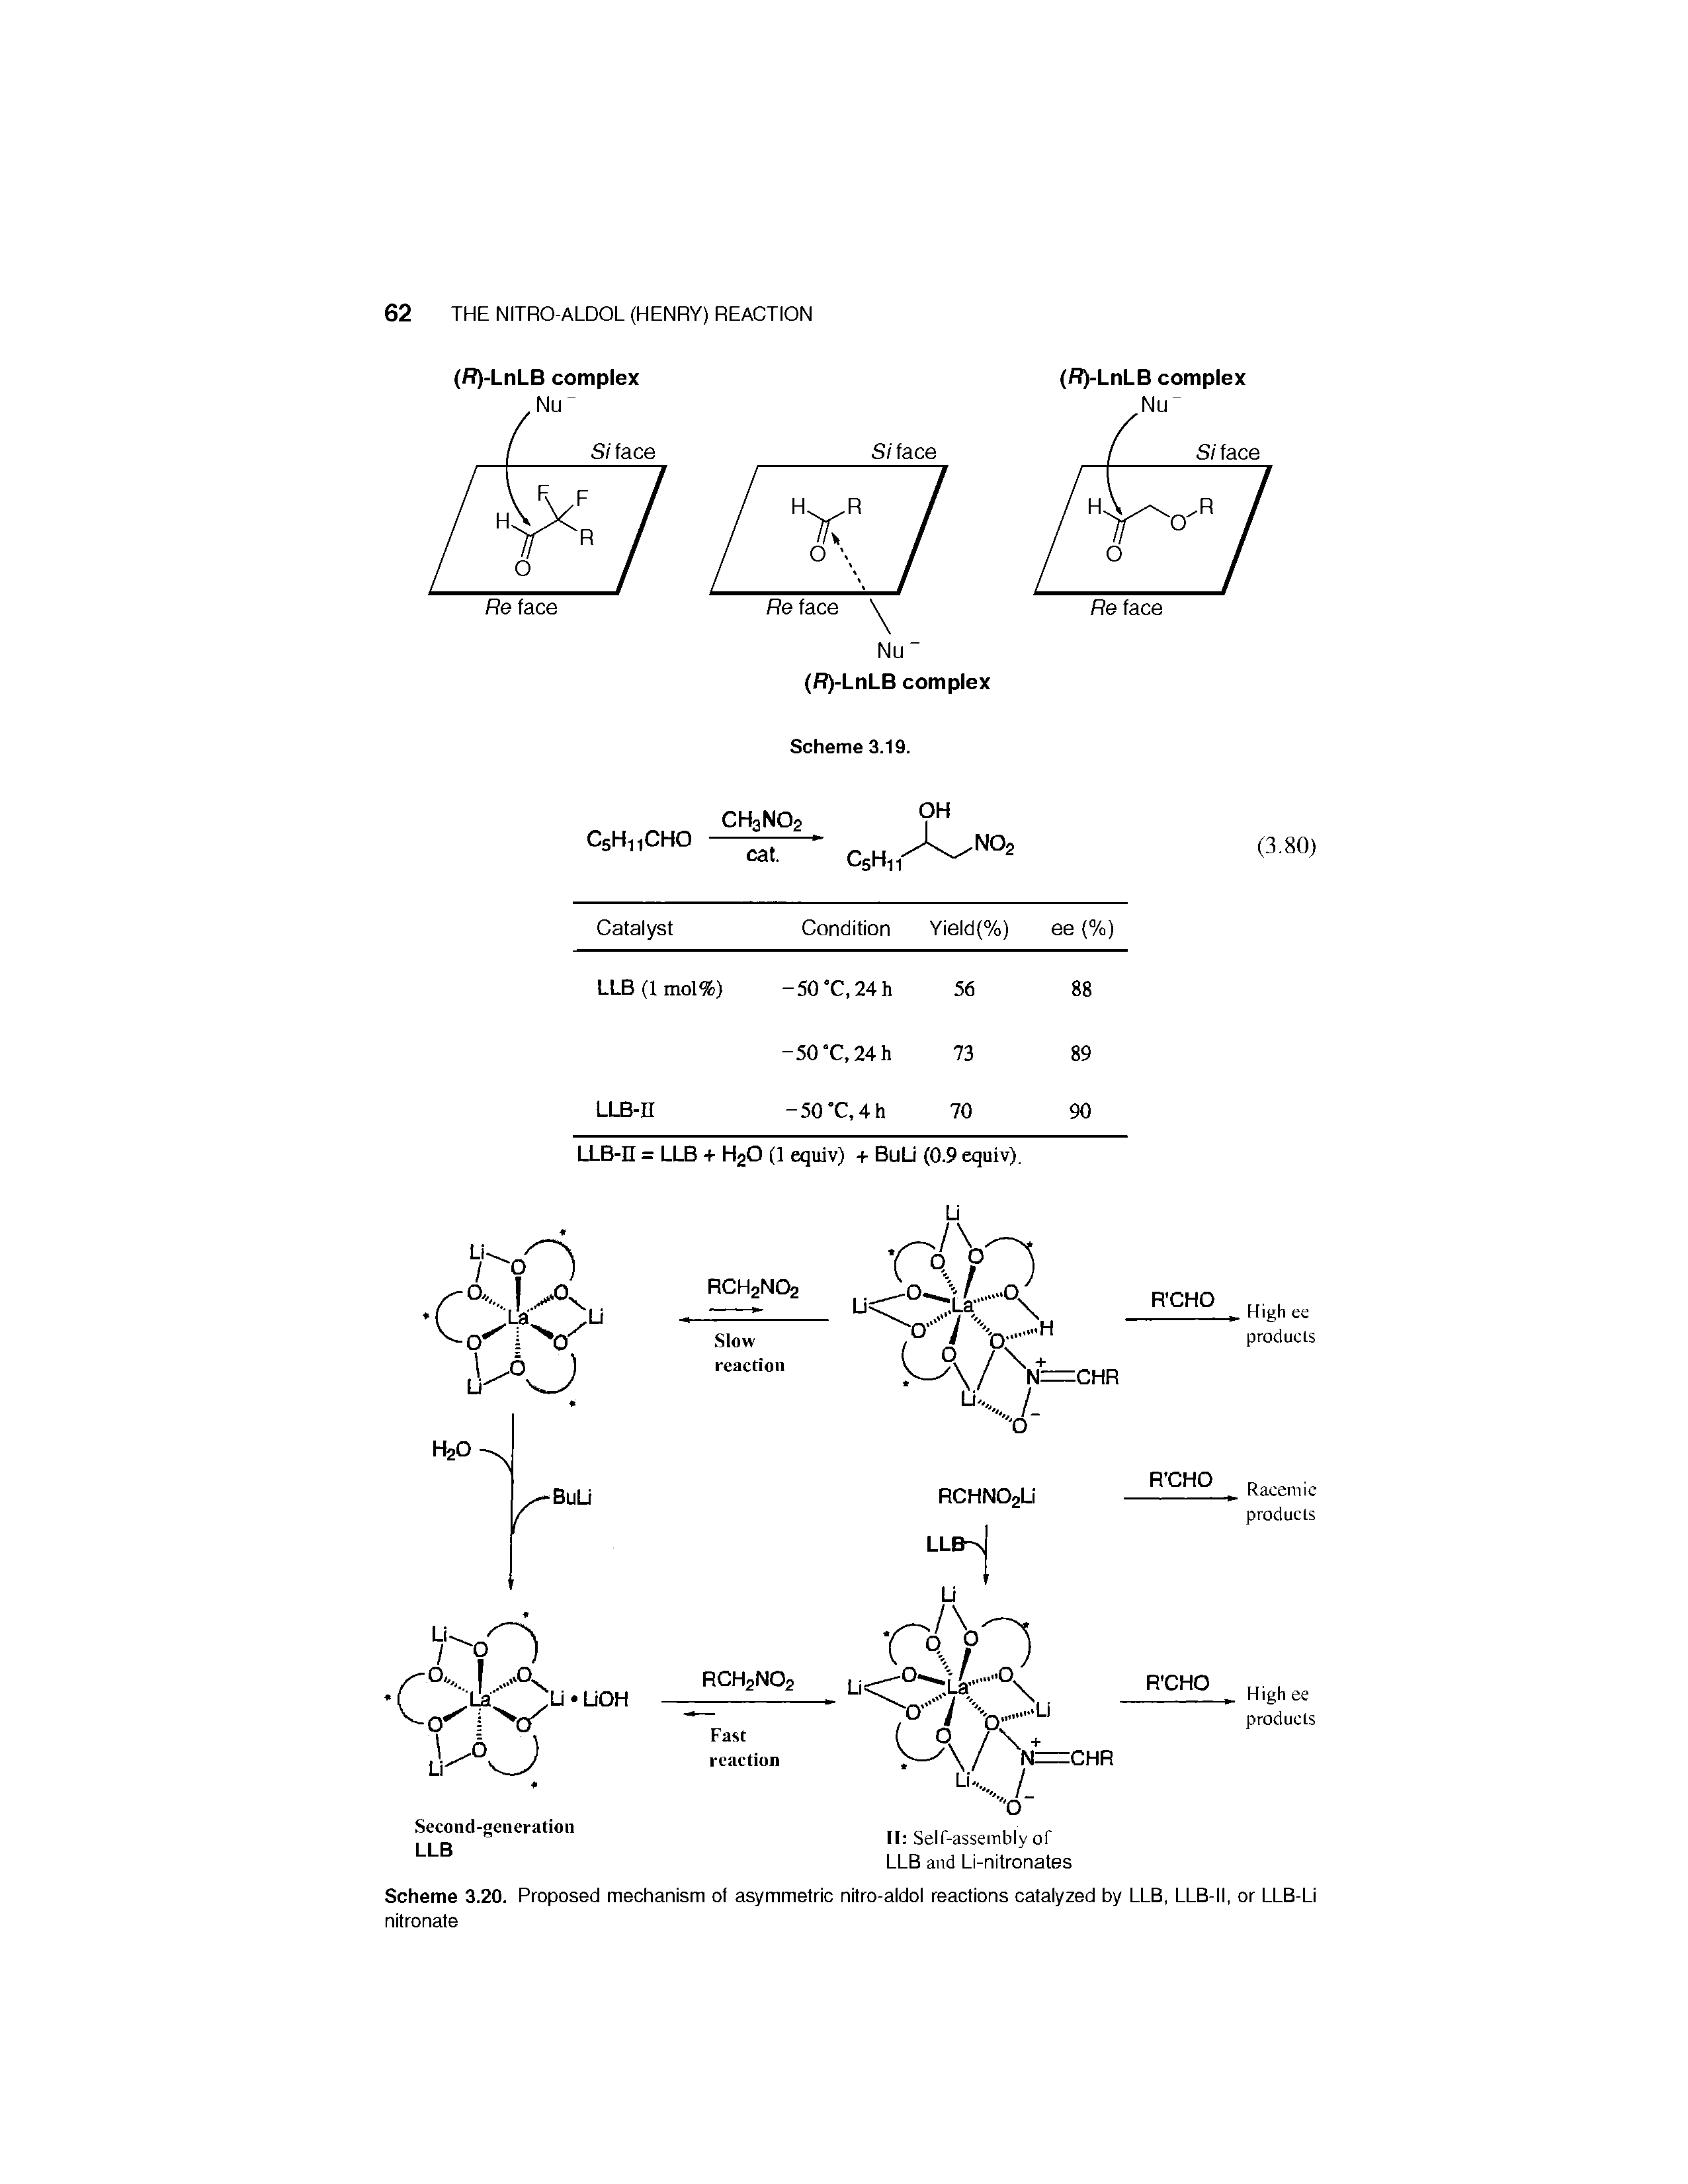 Scheme 3.20. Proposed mechanism of asymmetric nitro-aldol reactions catalyzed by LLB, LLB-II, or LLB-LI nitronate...